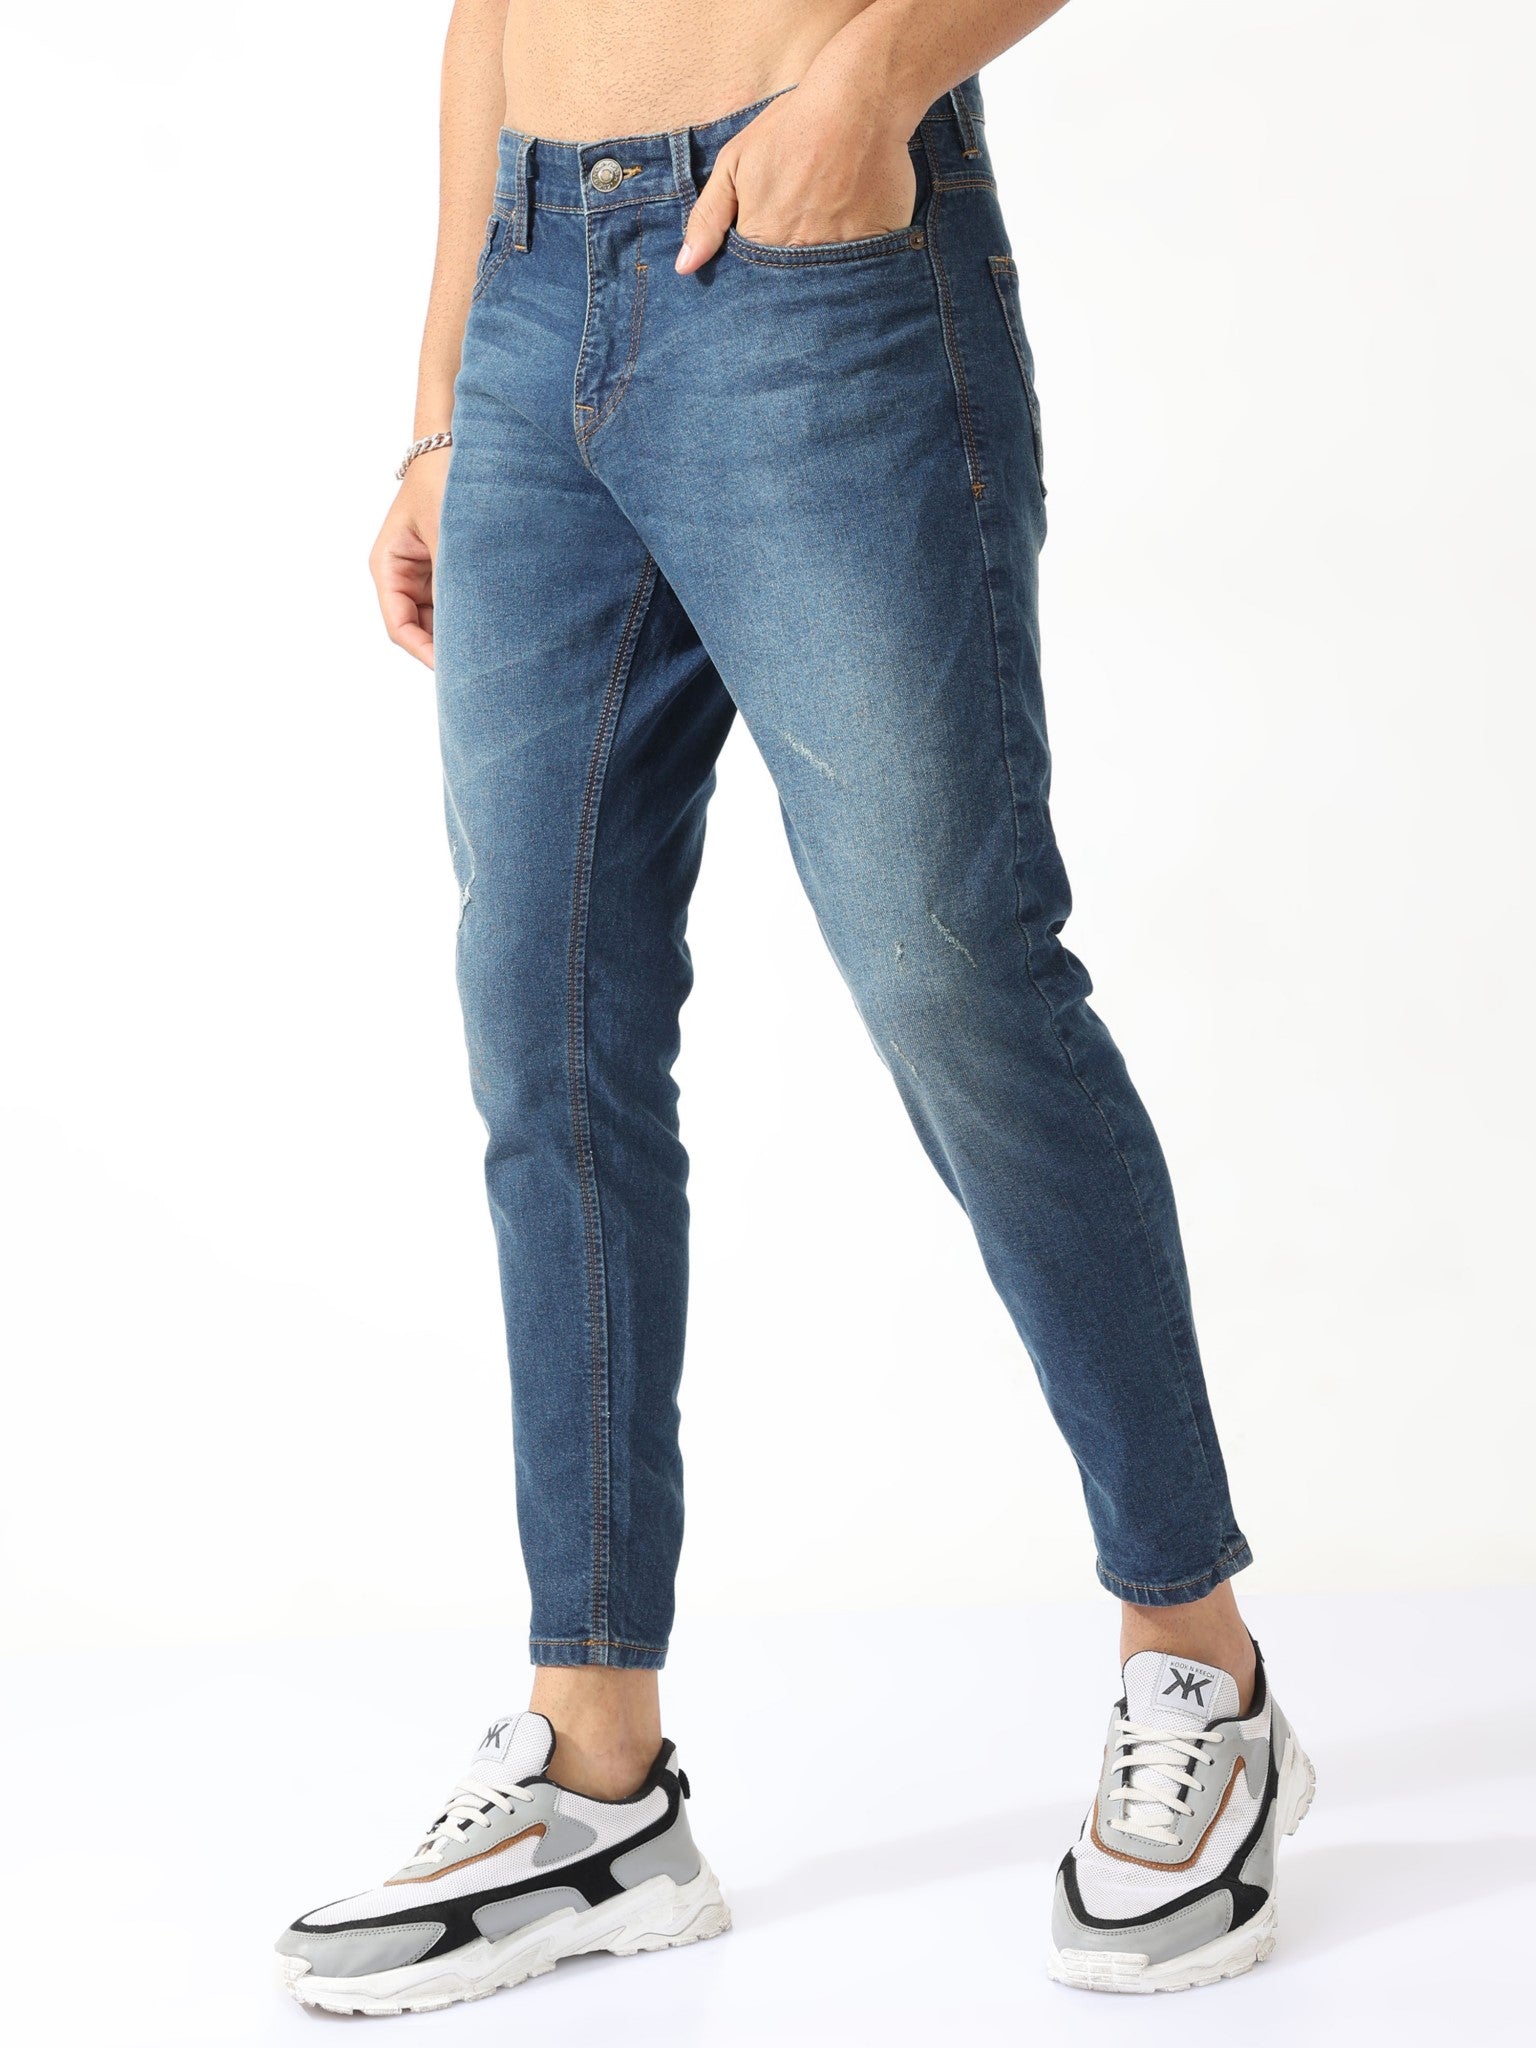 Heron Blue Skinny Jeans